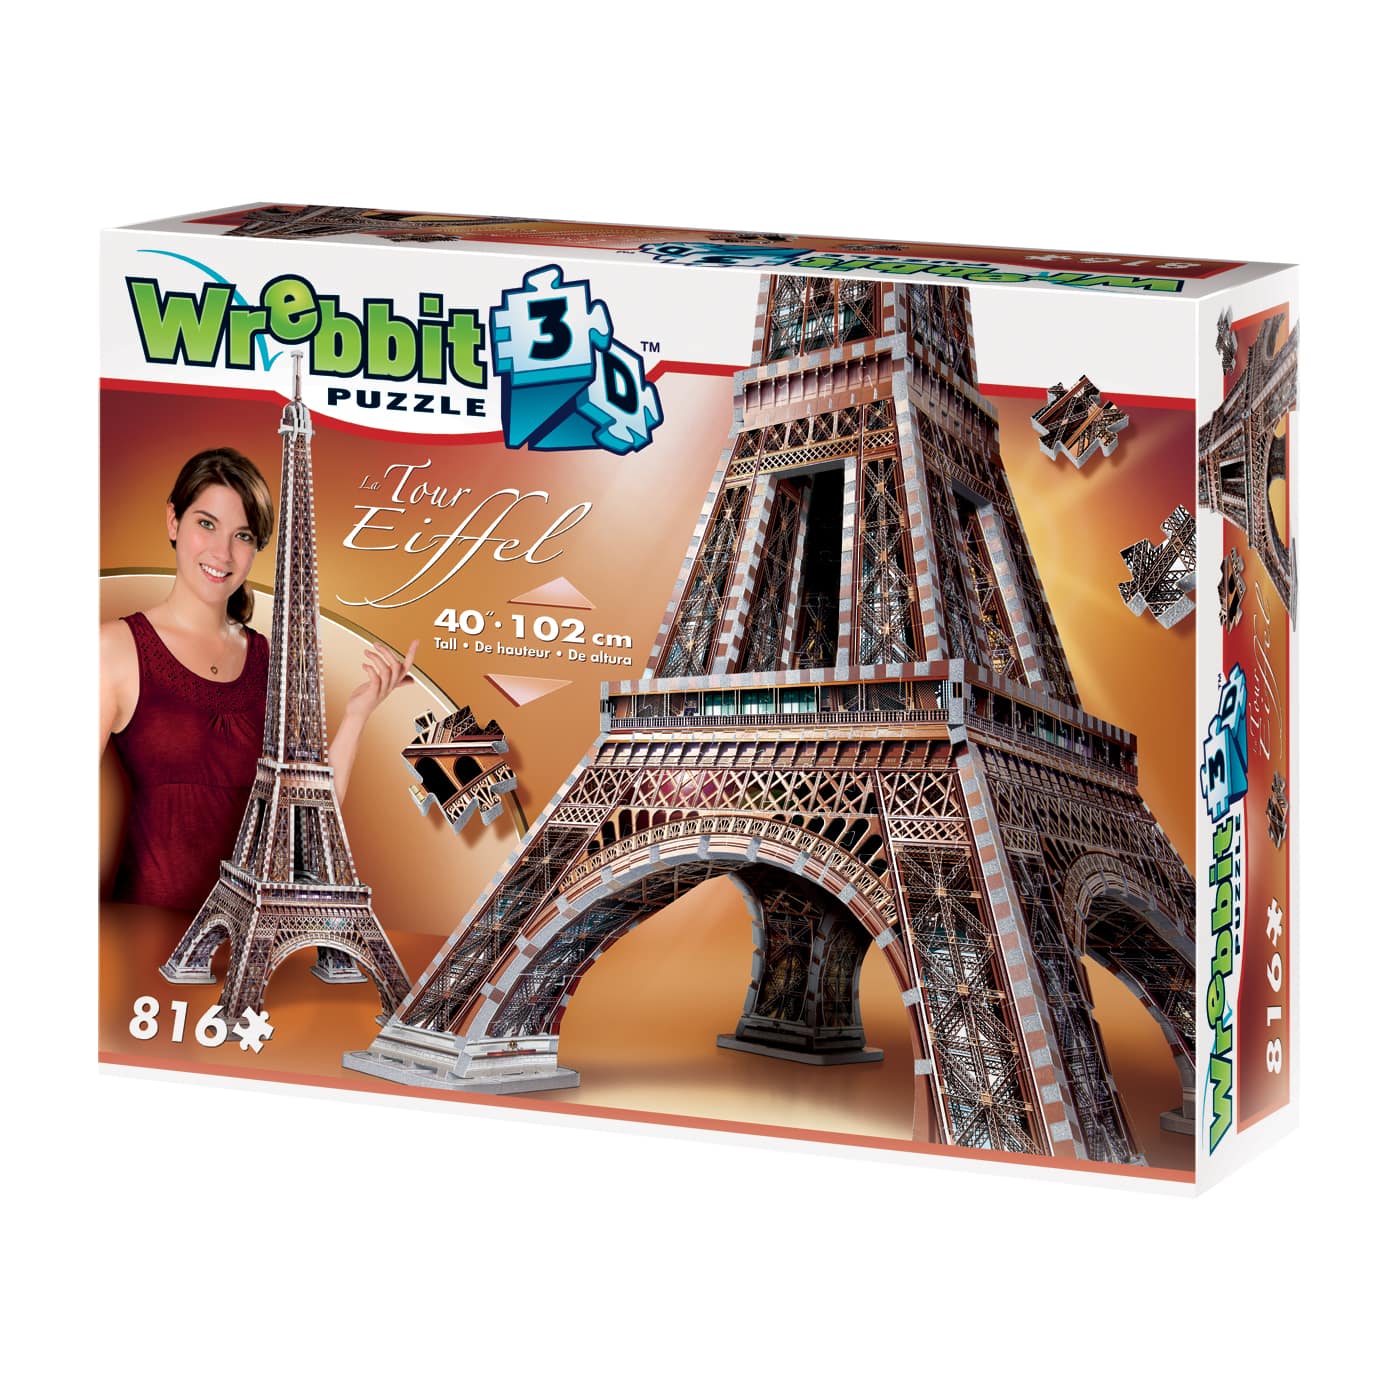 Wrebbit 3d Puzzle Eiffel Tower 816 Piece Puzzle Michaels